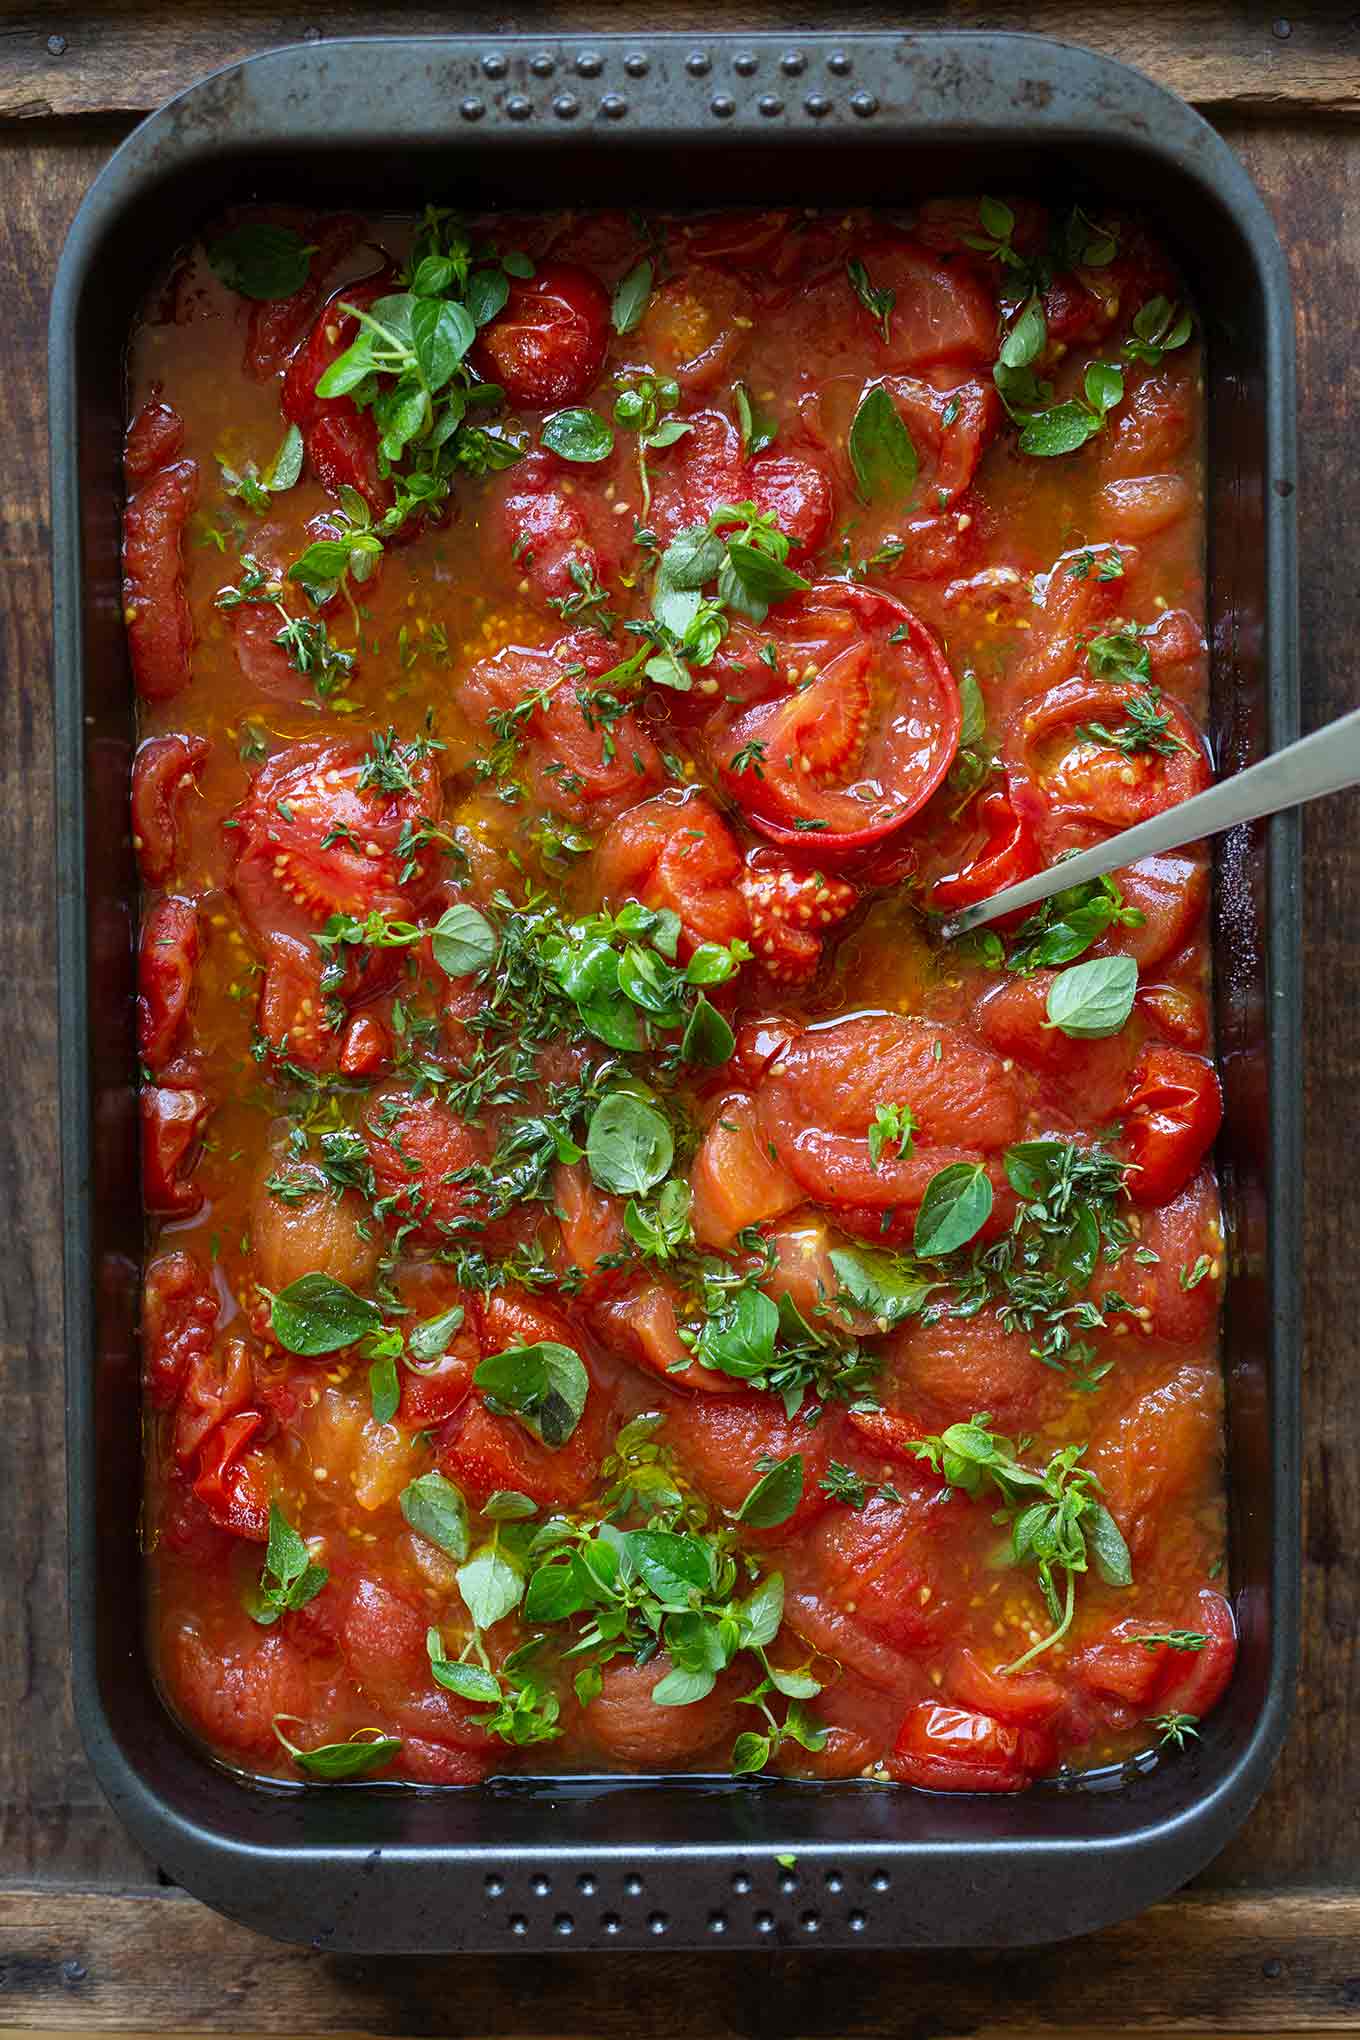 Einfache Tomatensauce aus dem Ofen. Tomatensauce selber machen war noch nie so einfach wie mit diesem schnellen Rezept. Unbedingt ausprobieren! - Kochkarussell.com #tomatensauce #selbermachen #ofentomatensauce #rezept